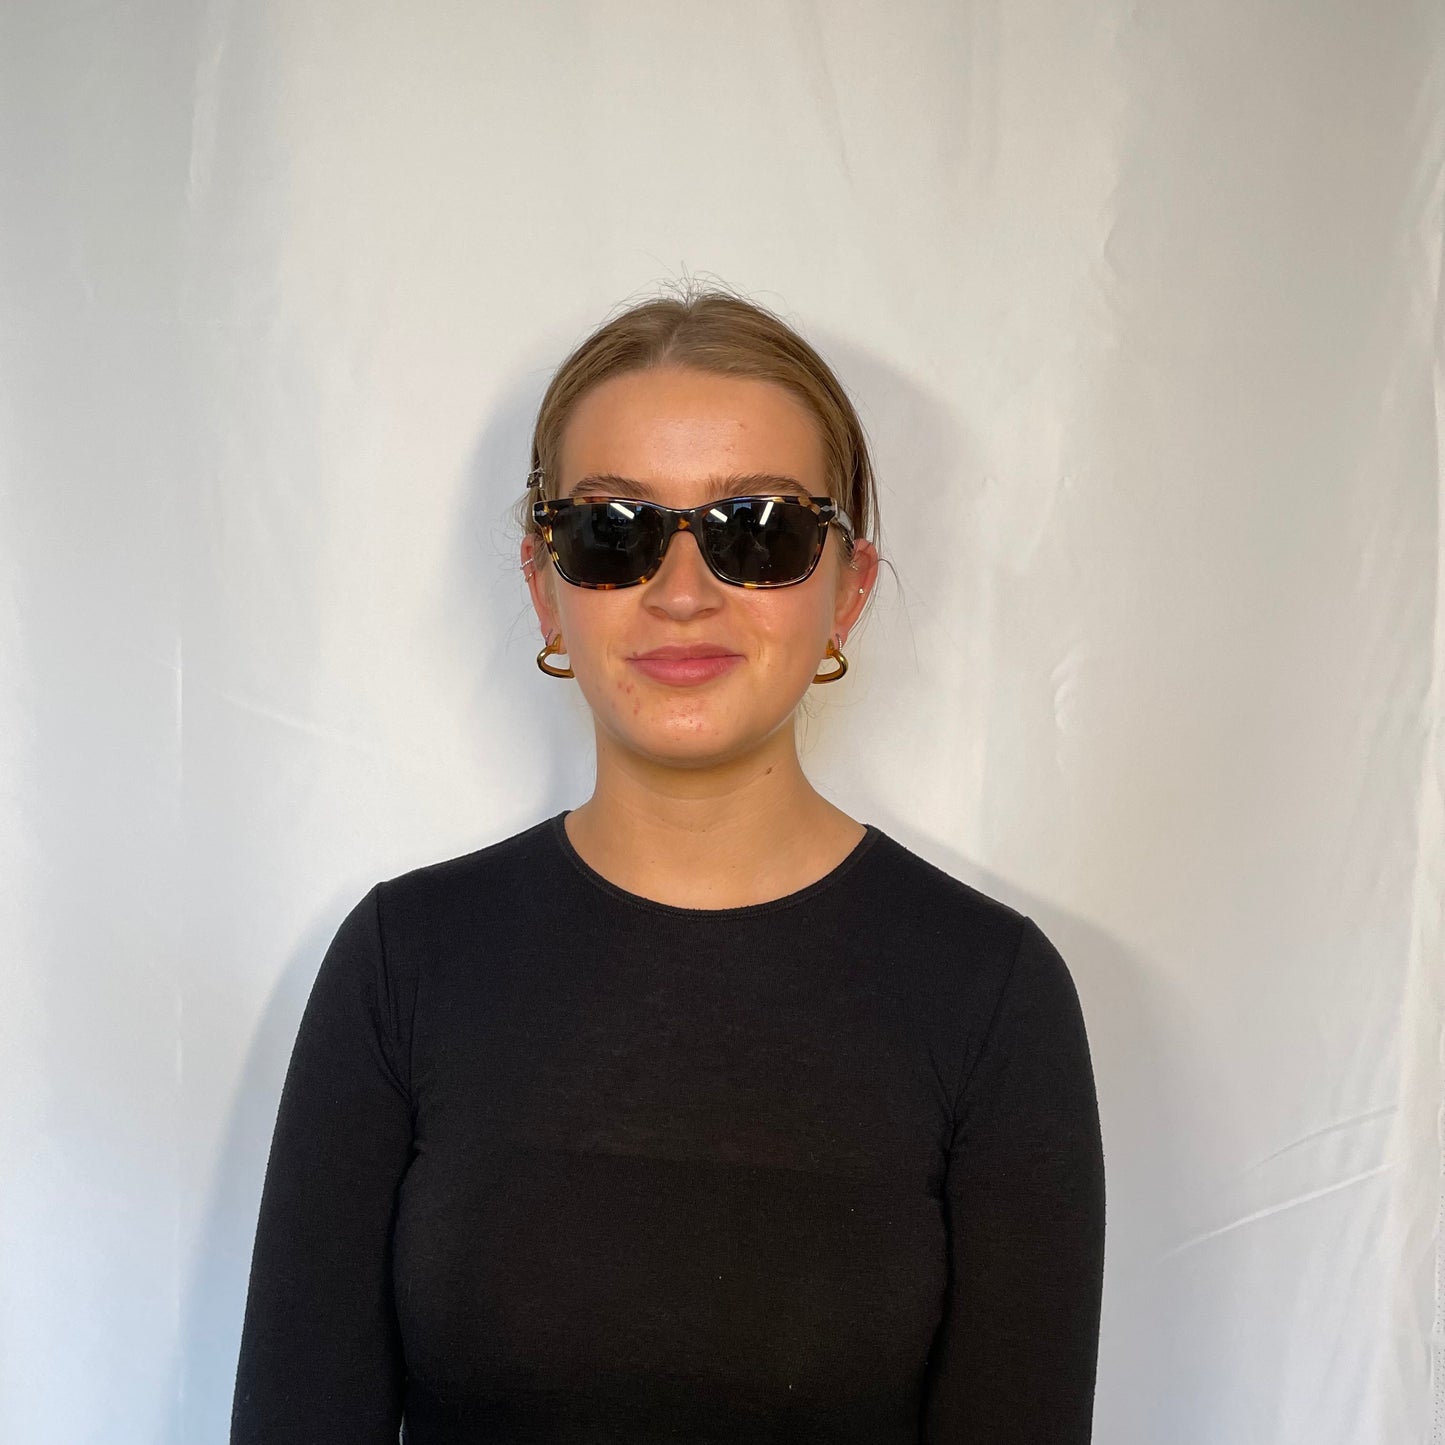 Persol Polarized Tabacco Virginia Sunglasses